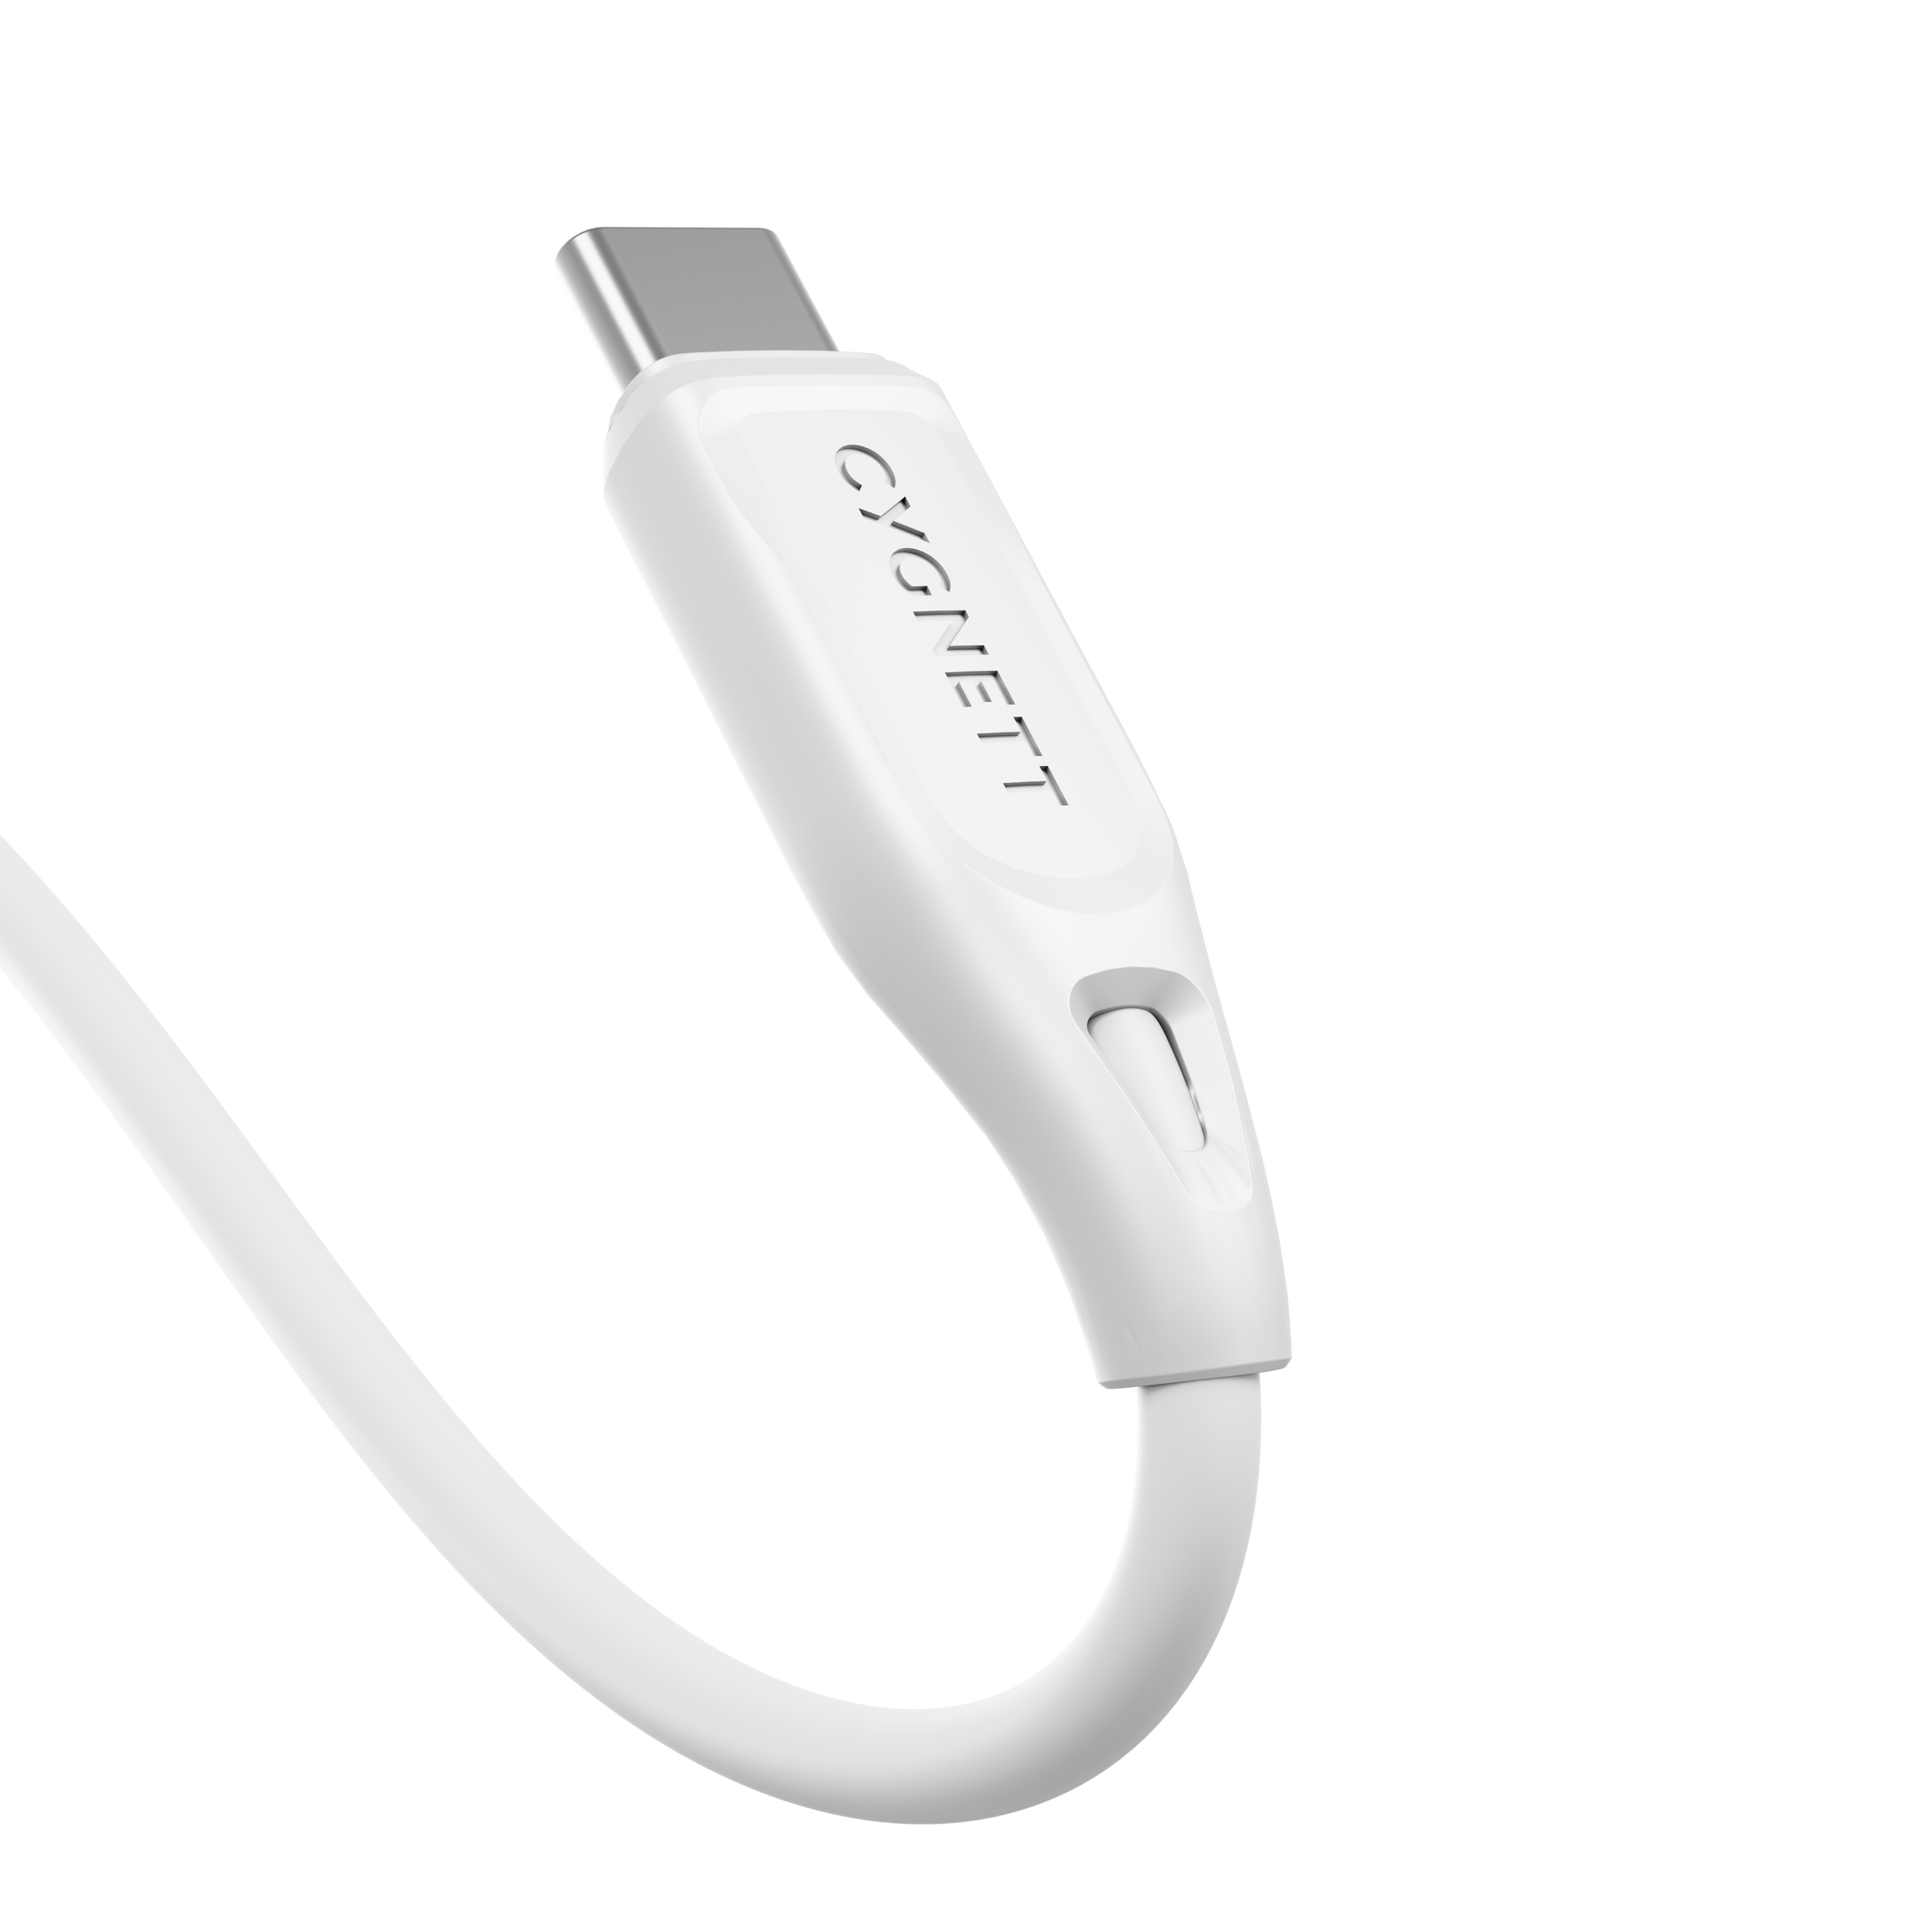 USB-C to USB-C (USB 2.0) Cable 1m – White - Cygnett (AU)